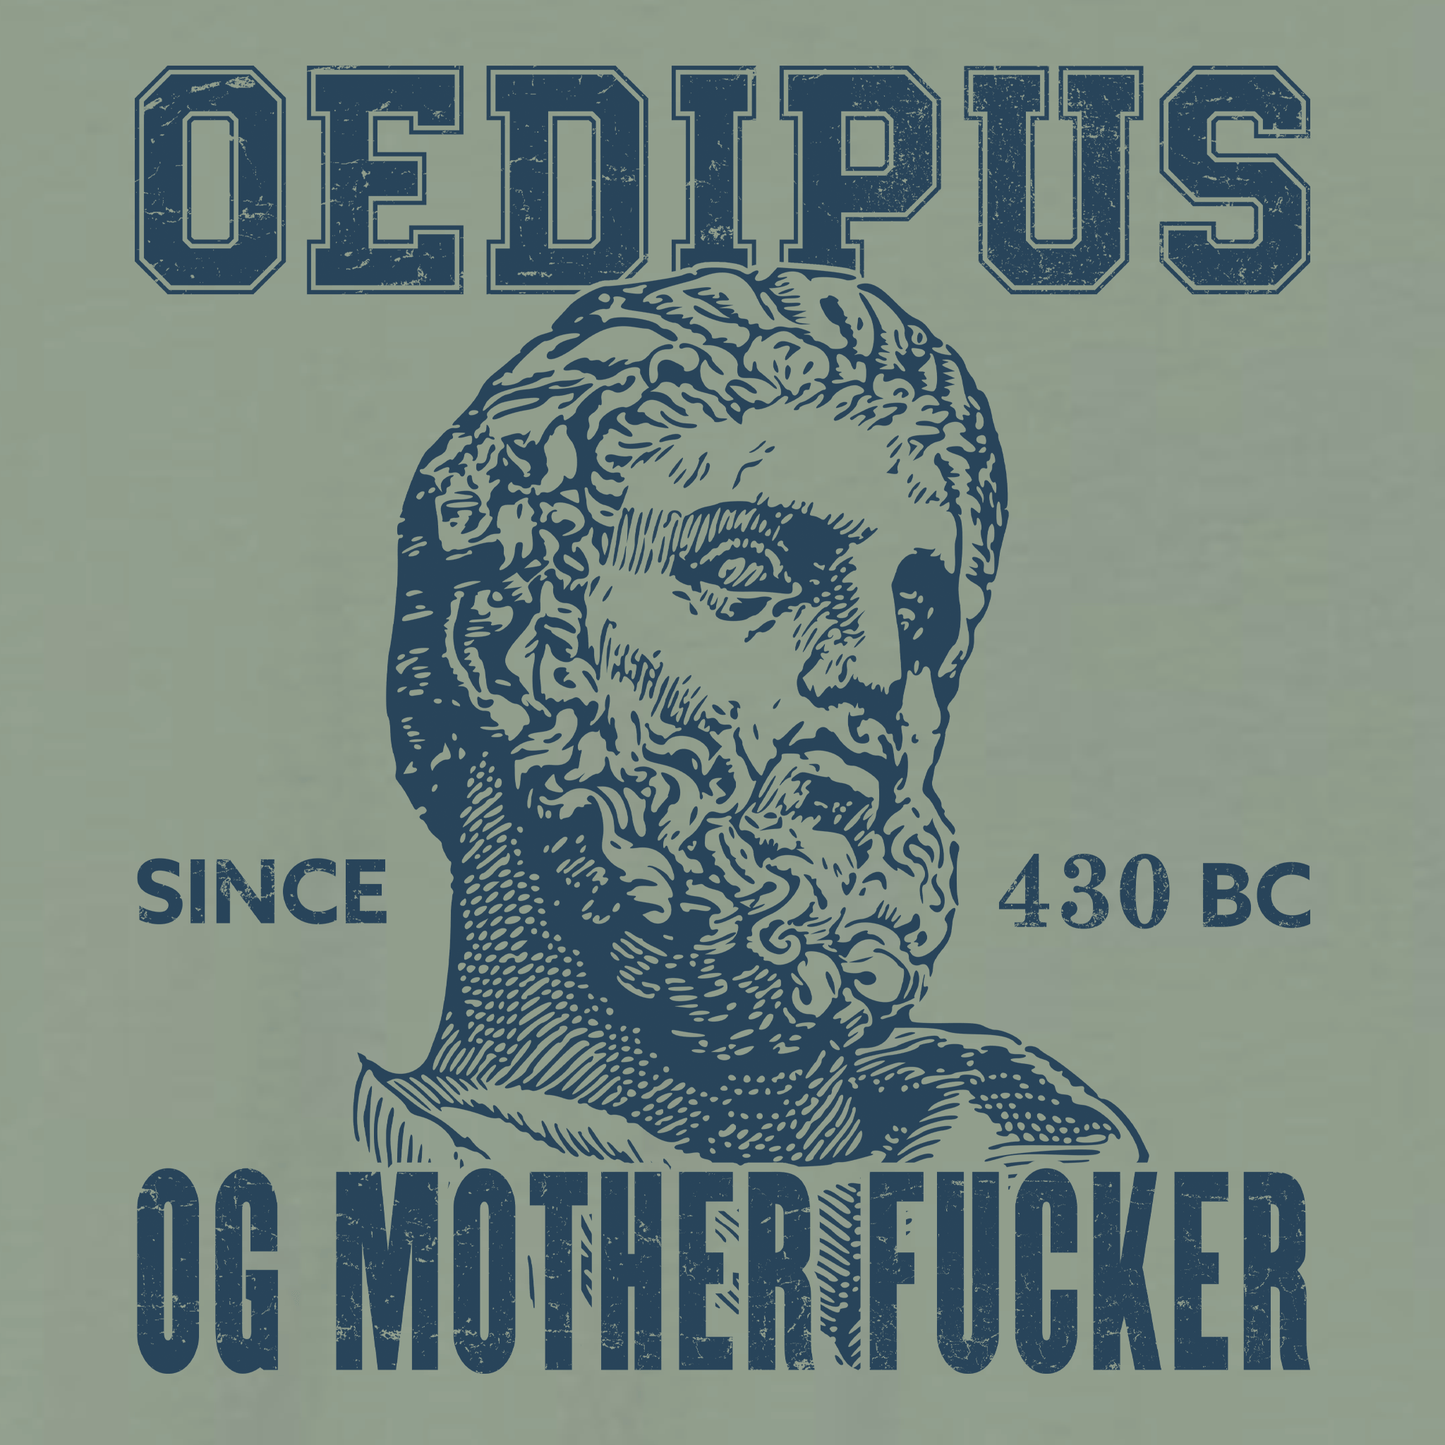 Oedipus Rex T-Shirt